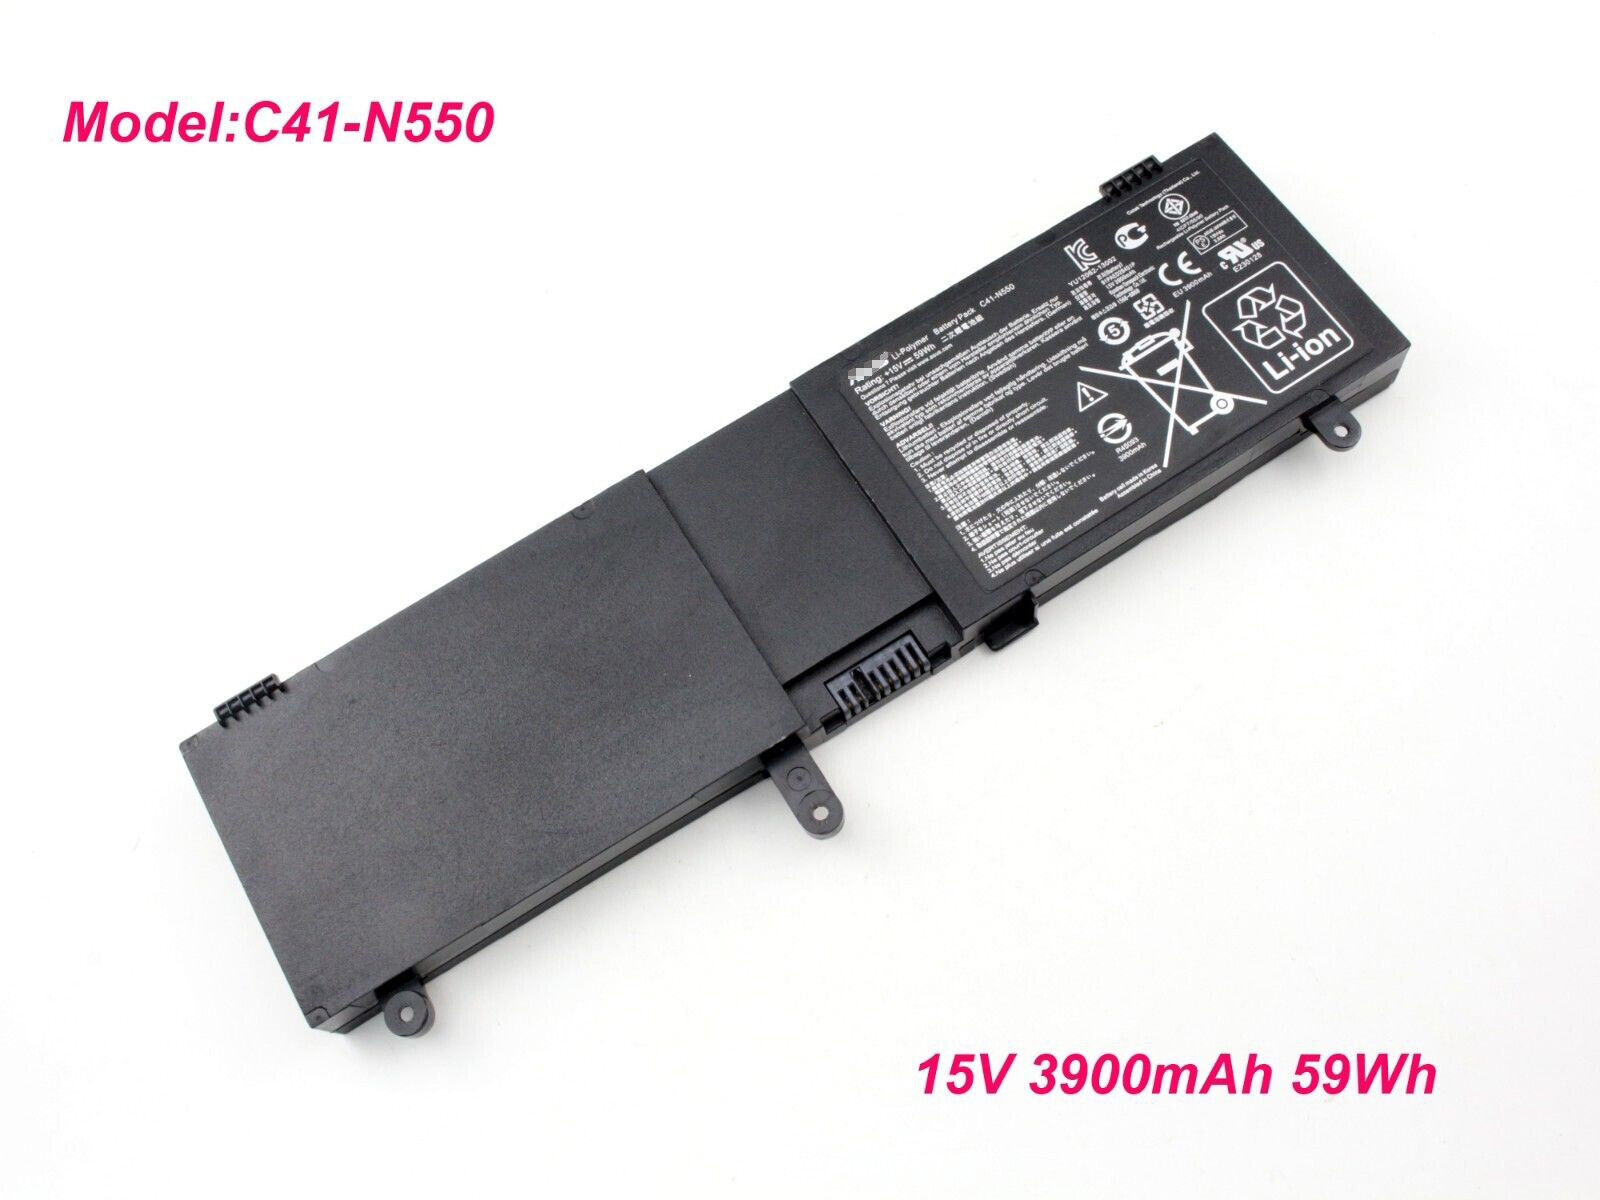 Genuine C41-N550 battery For ASUS N550J N550JV N550JK N550JA N550LF Q550L 59Wh